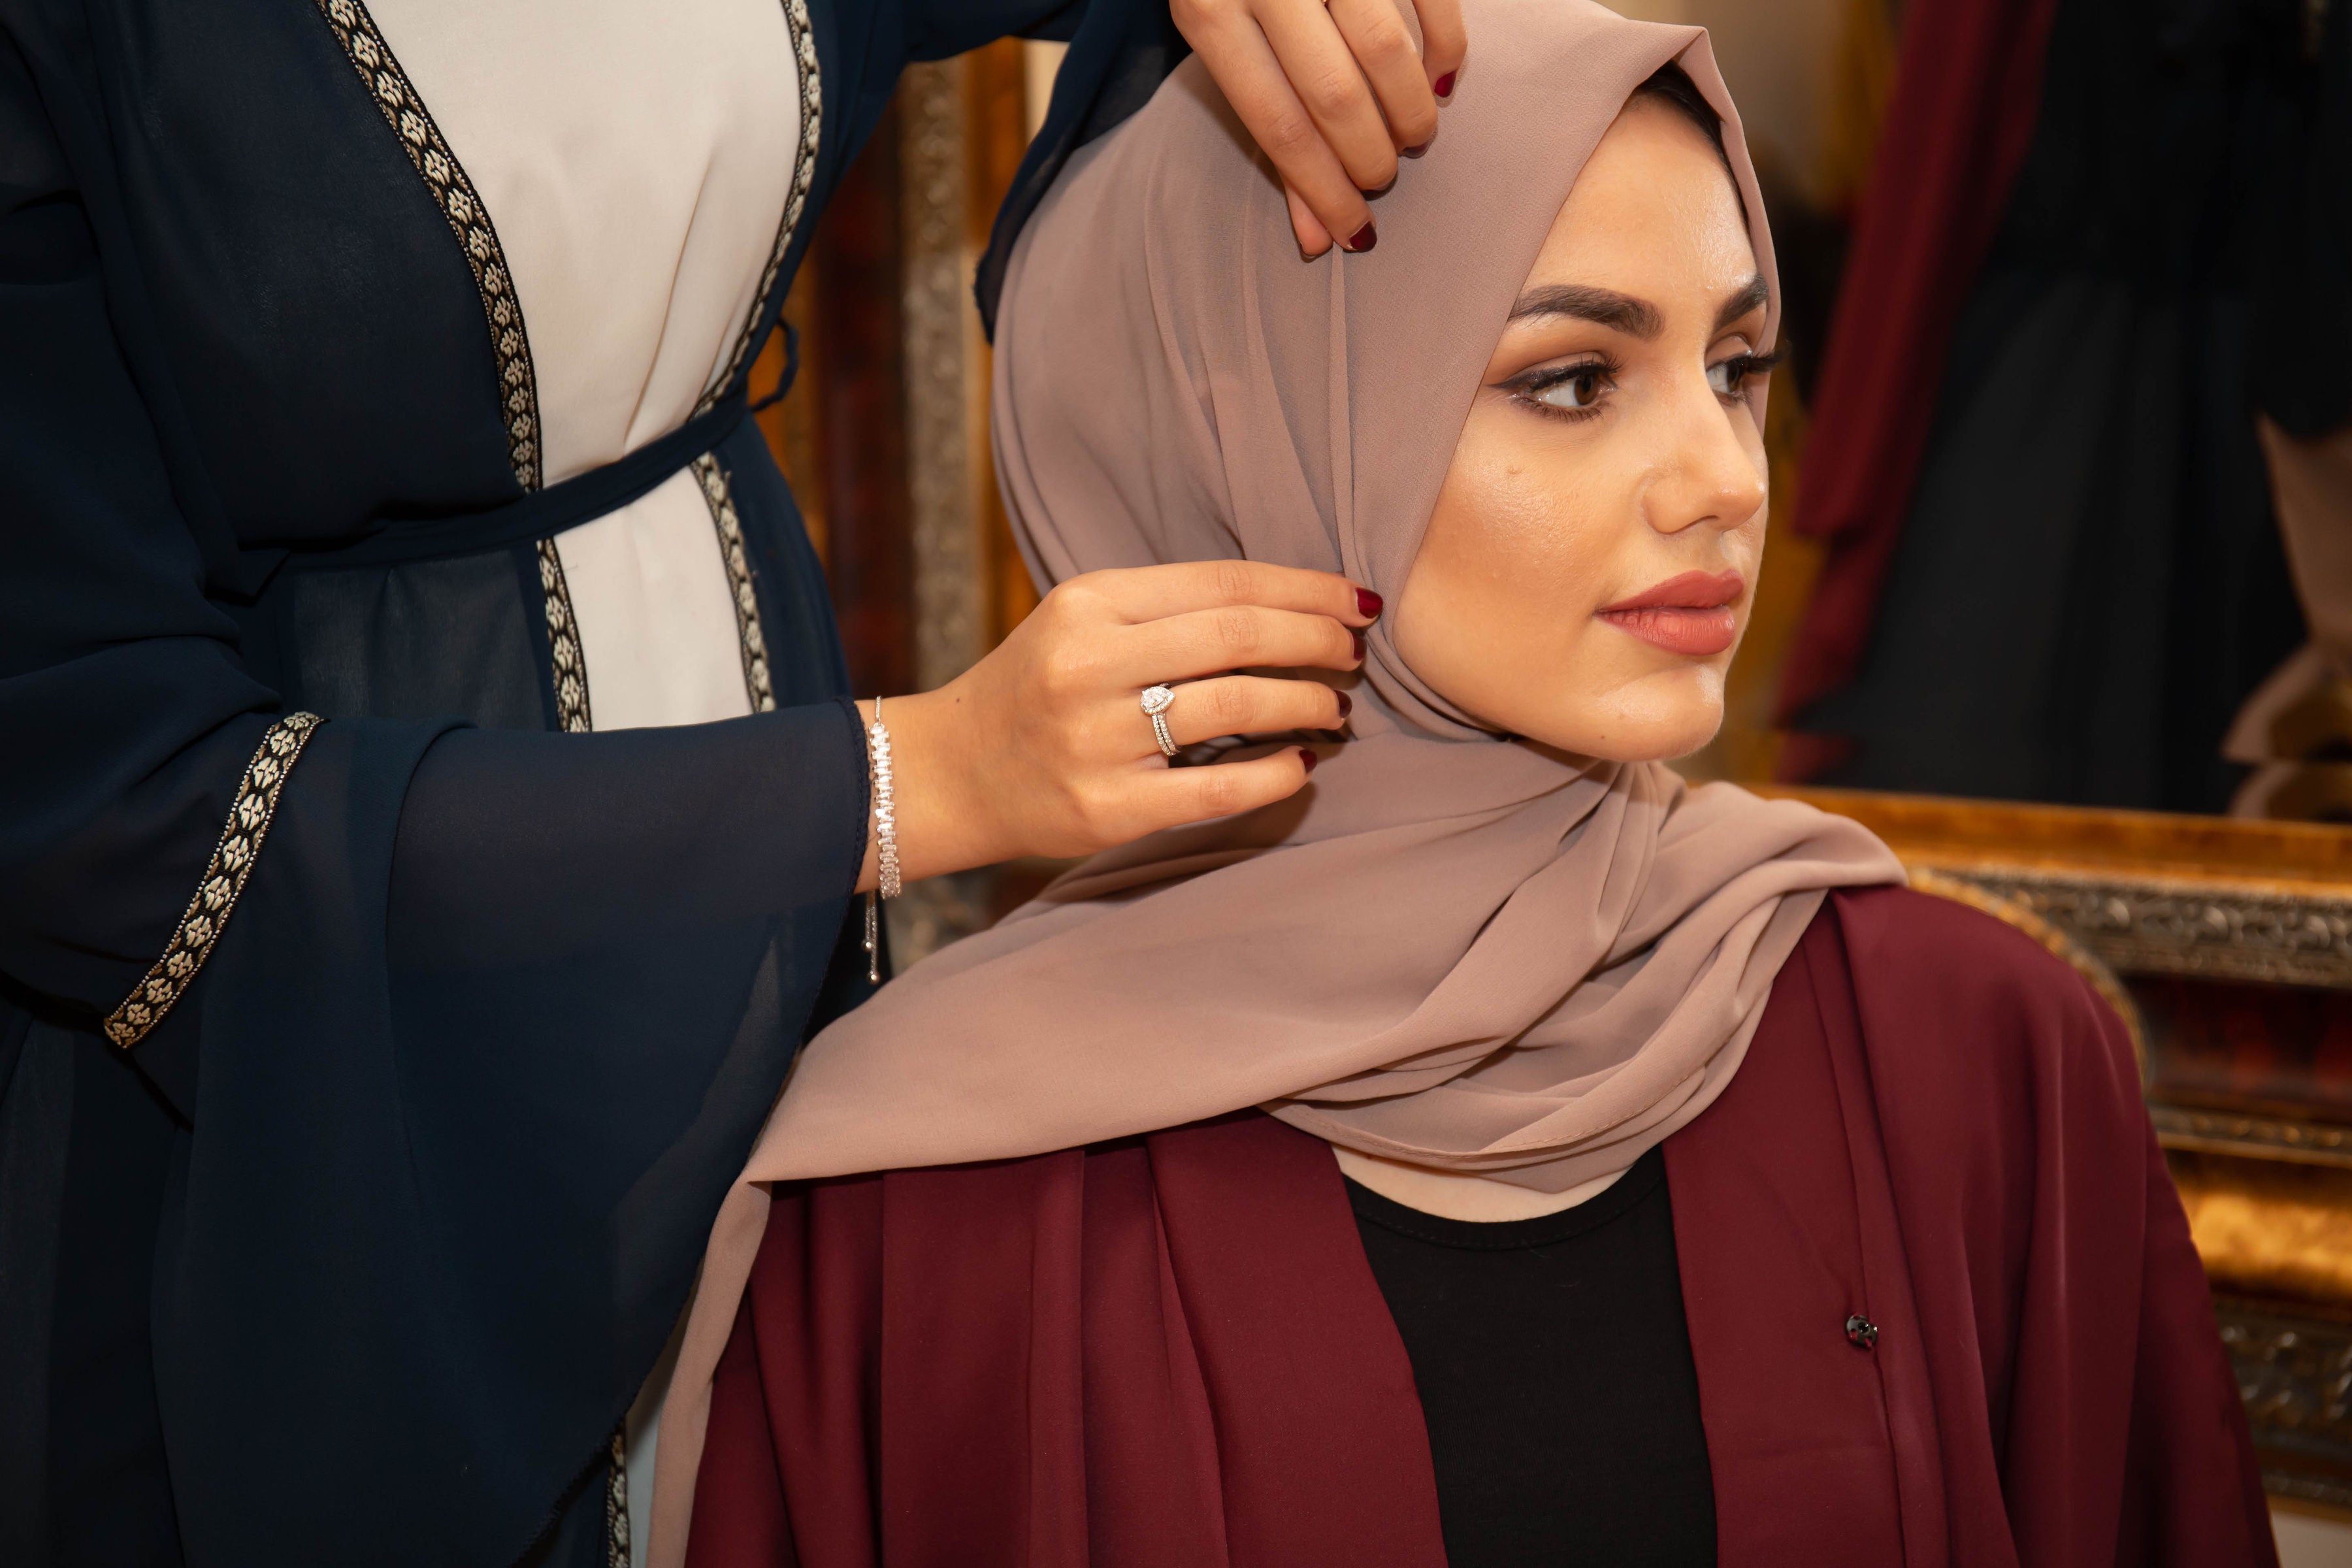 culture hijab magnets｜TikTok Search